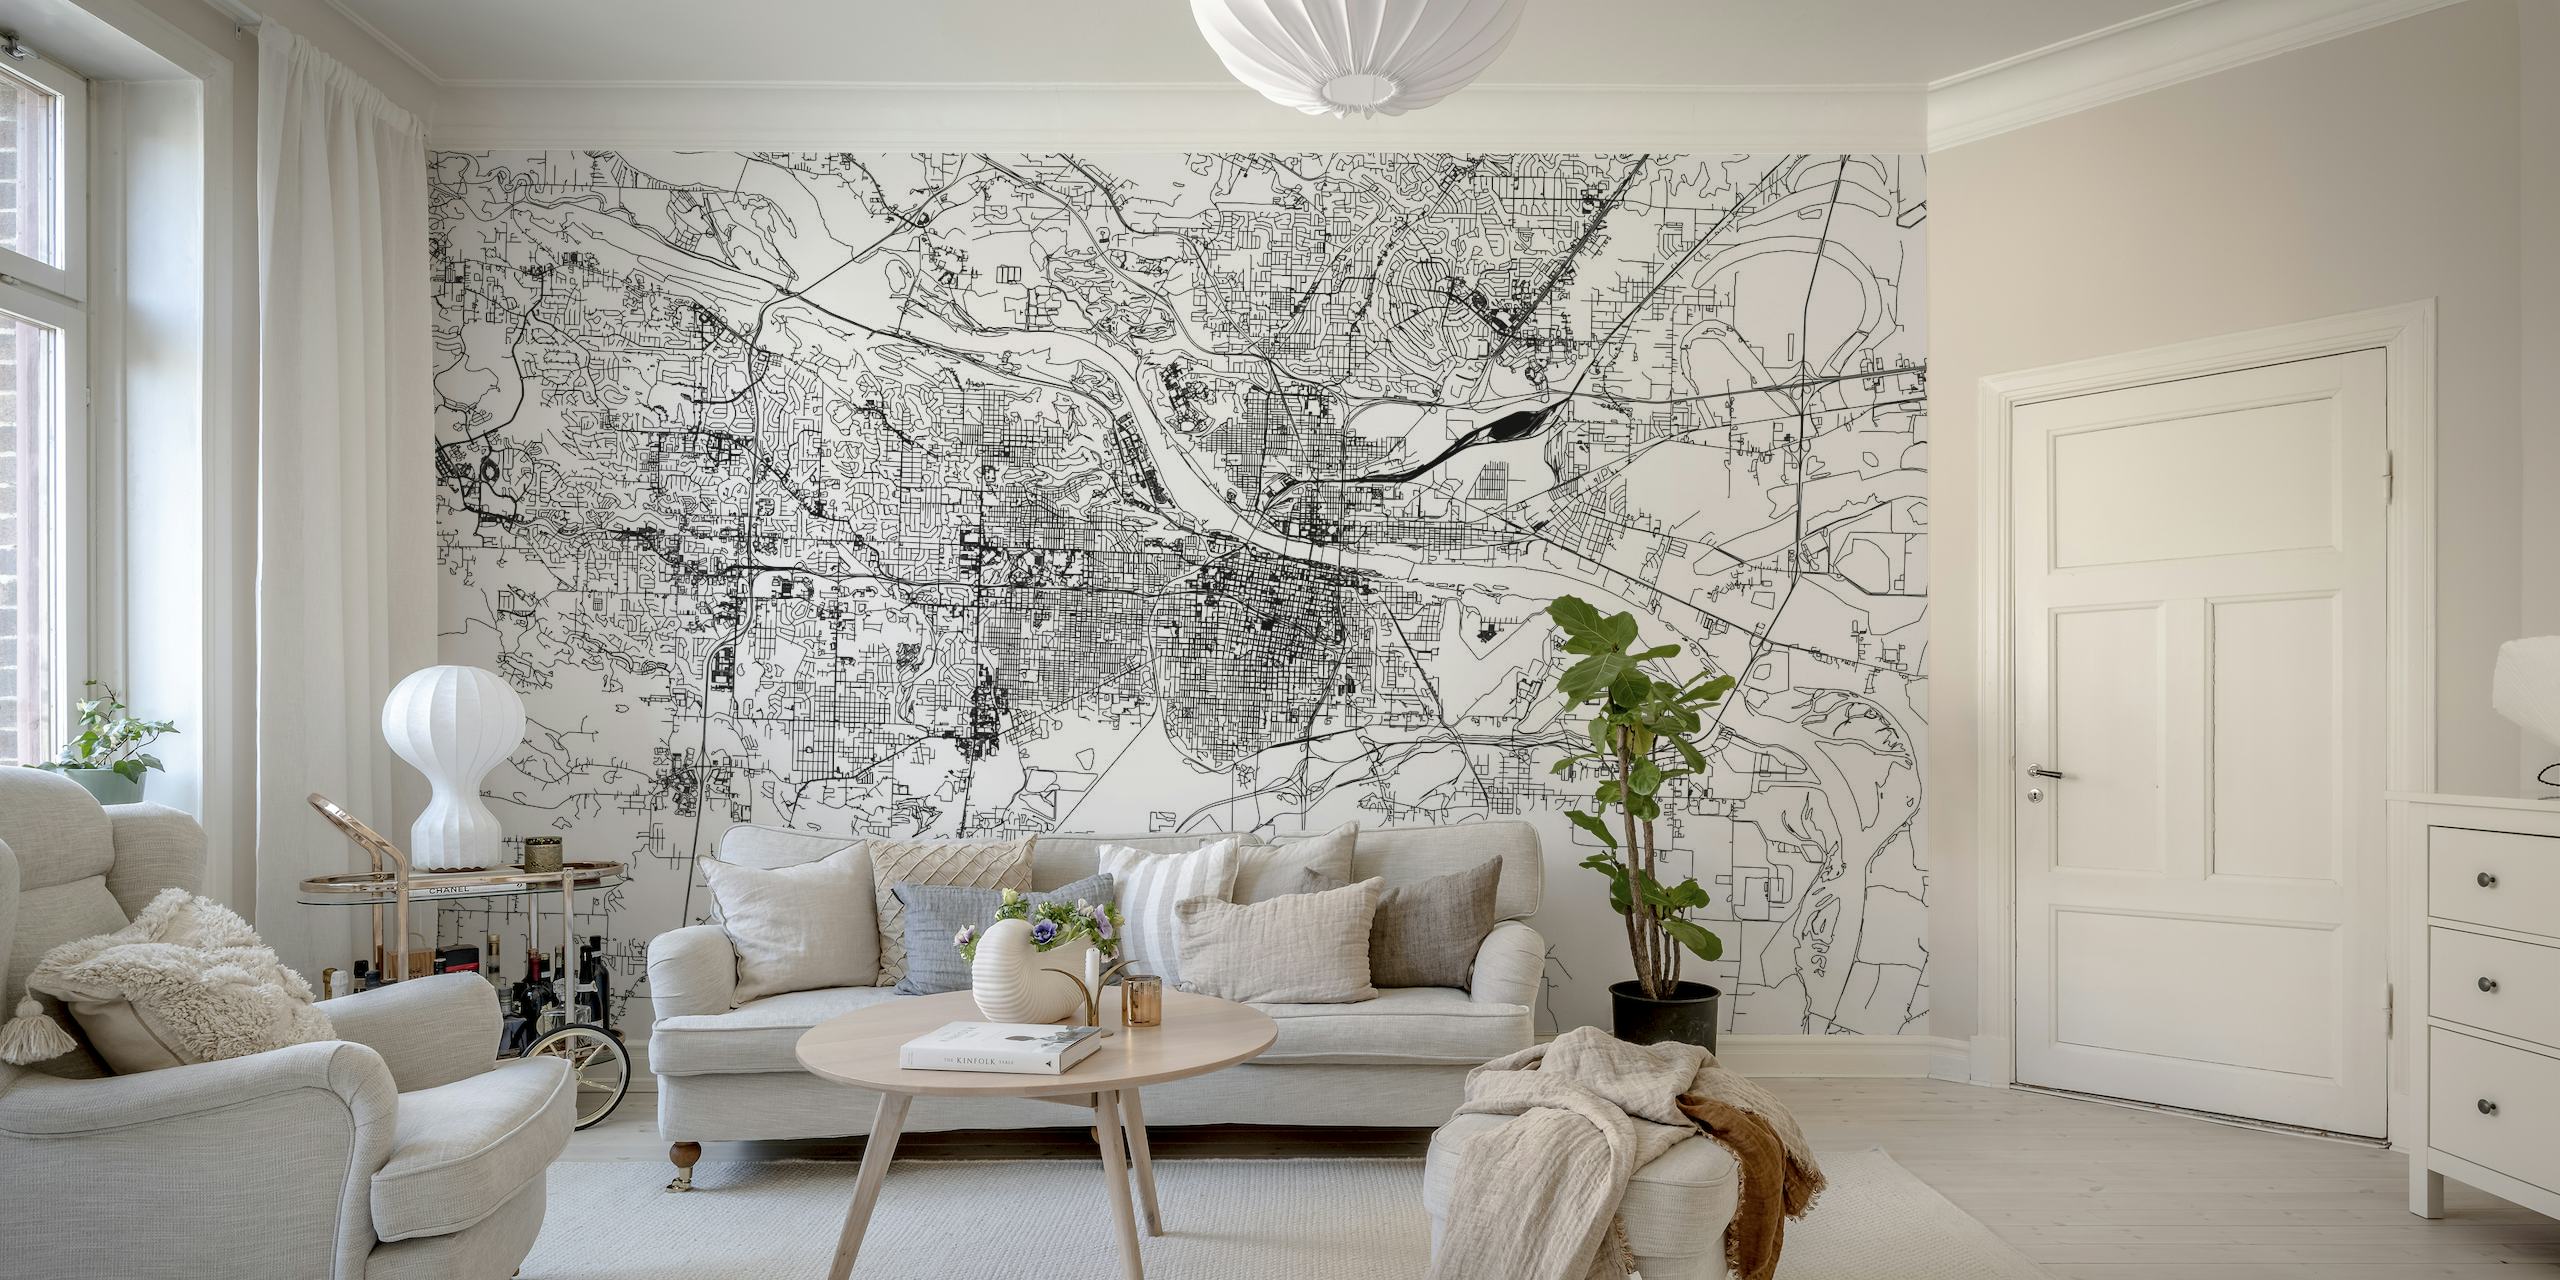 Monochromes Wandgemälde der Karte von Little Rock mit detaillierter Straßenaufteilung